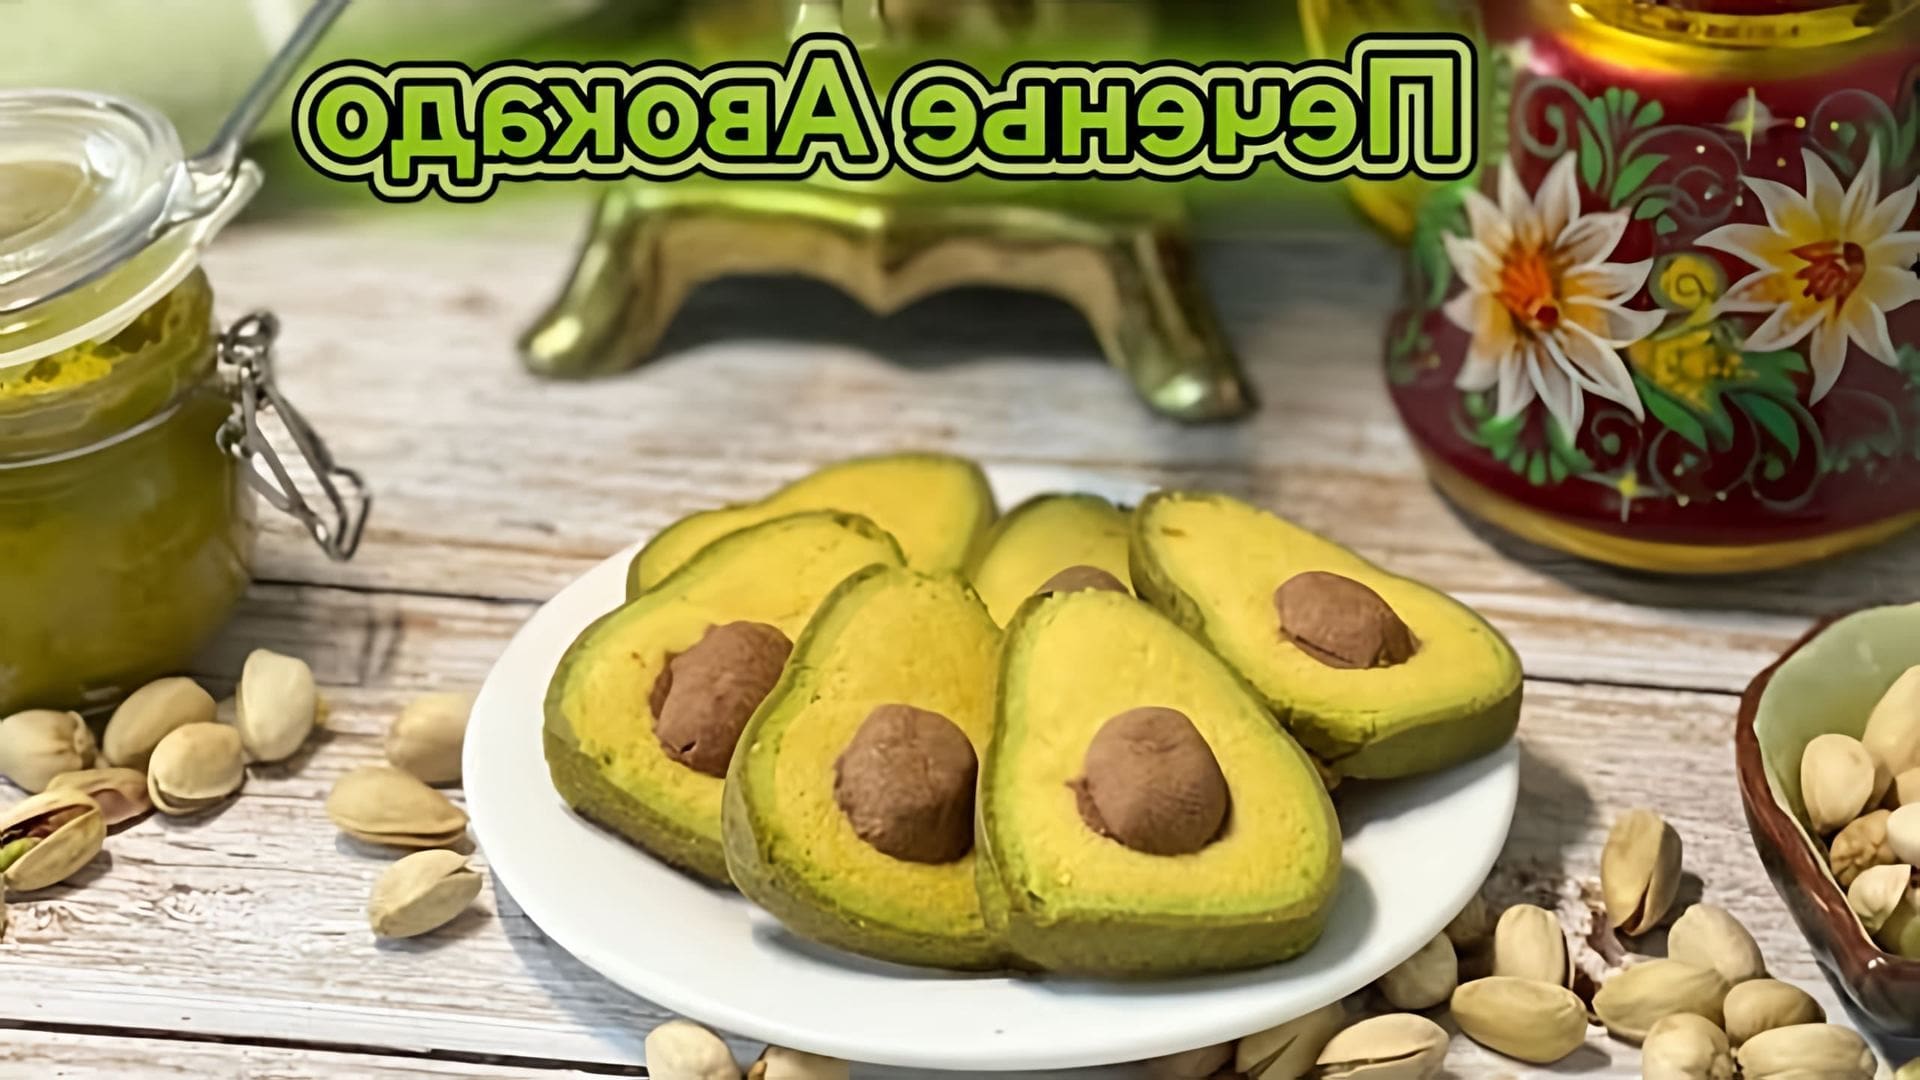 В этом видео демонстрируется процесс приготовления необычного и очень вкусного песочного печенья в форме авокадо